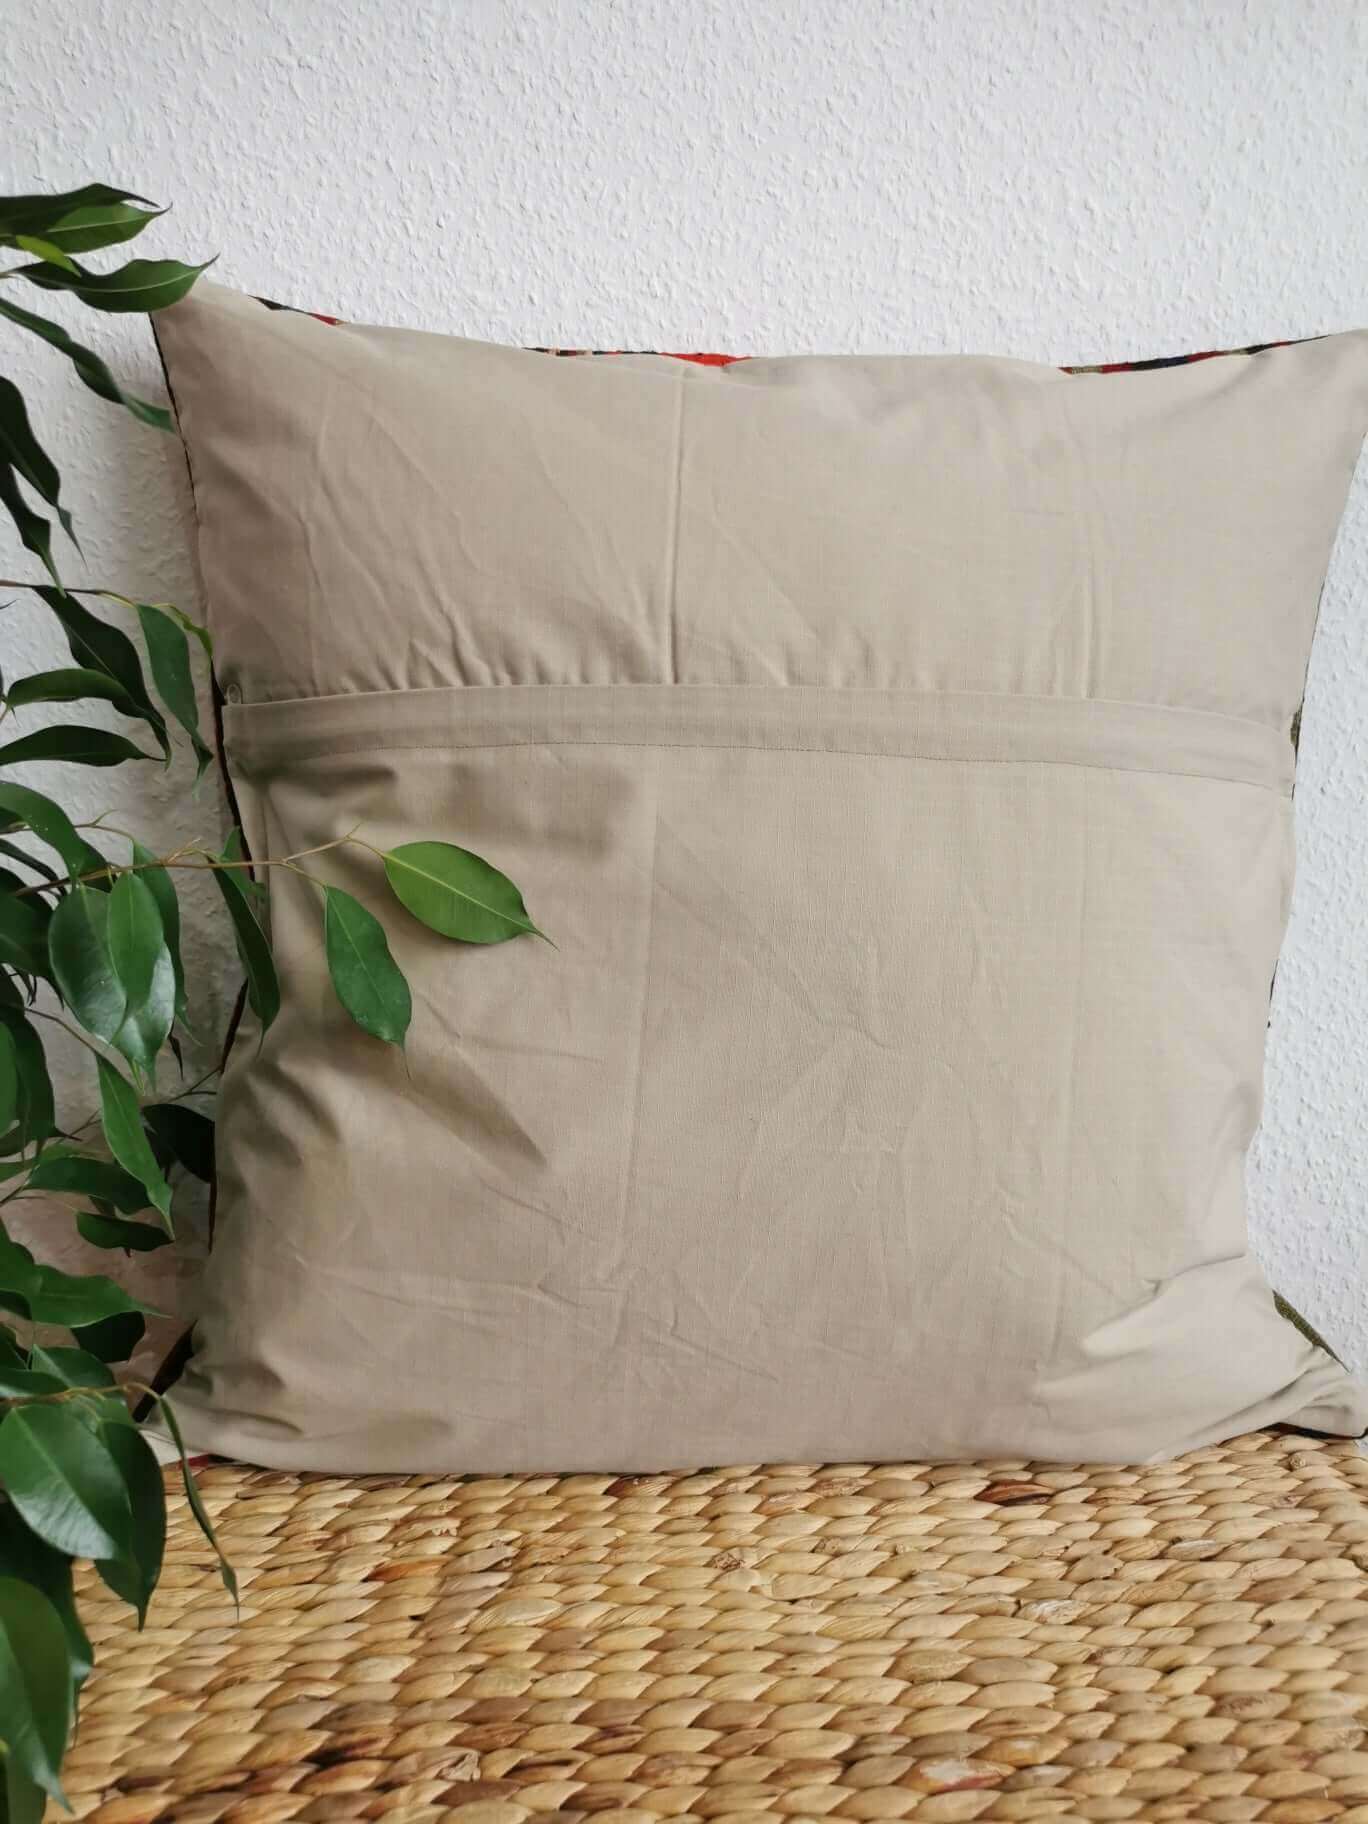 Kilim Pillow Cover, Turkey, old, unique, vintage, Kelim, Kelimkissen, Kissenhuelle, pillow case, boho, eclectic, arabic design